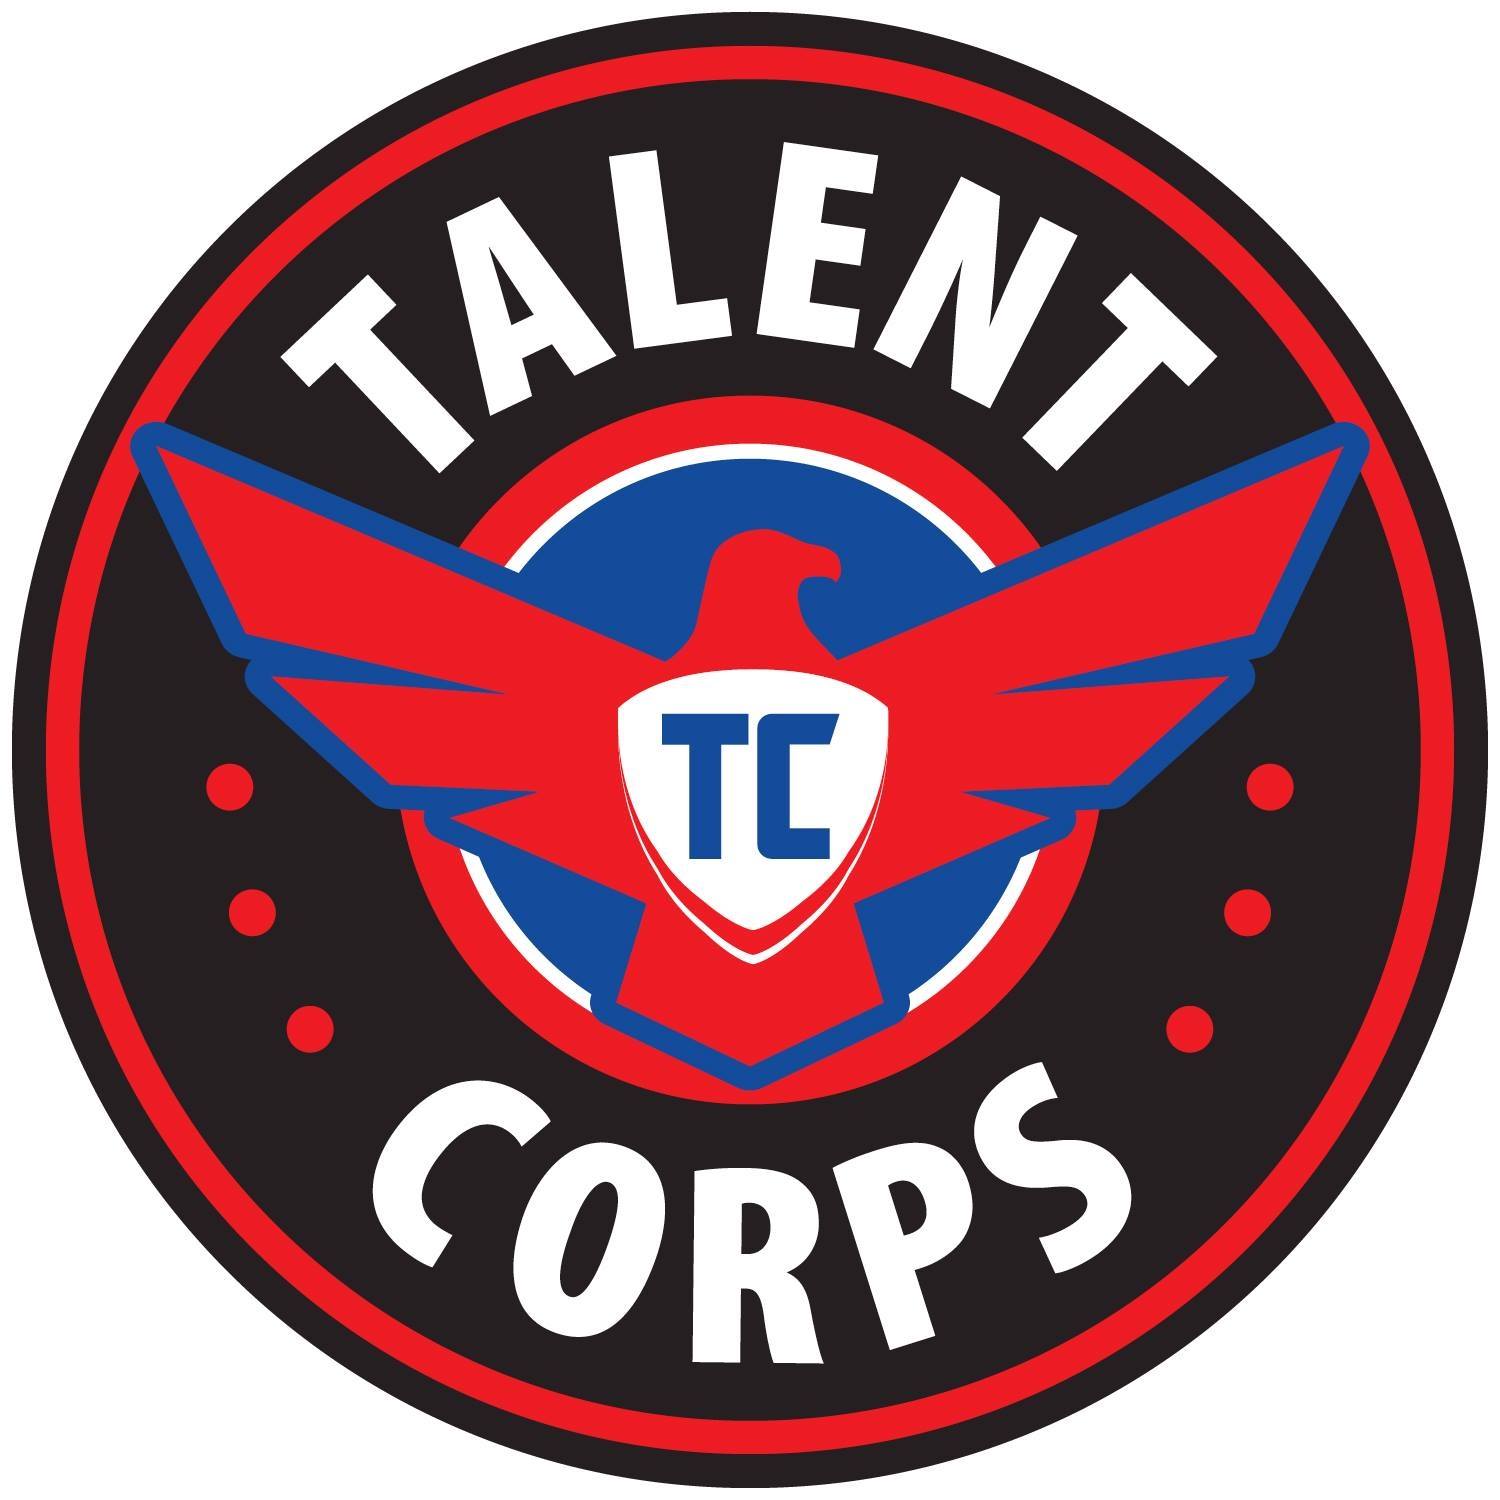 Talent Corps - Phoenix reviews